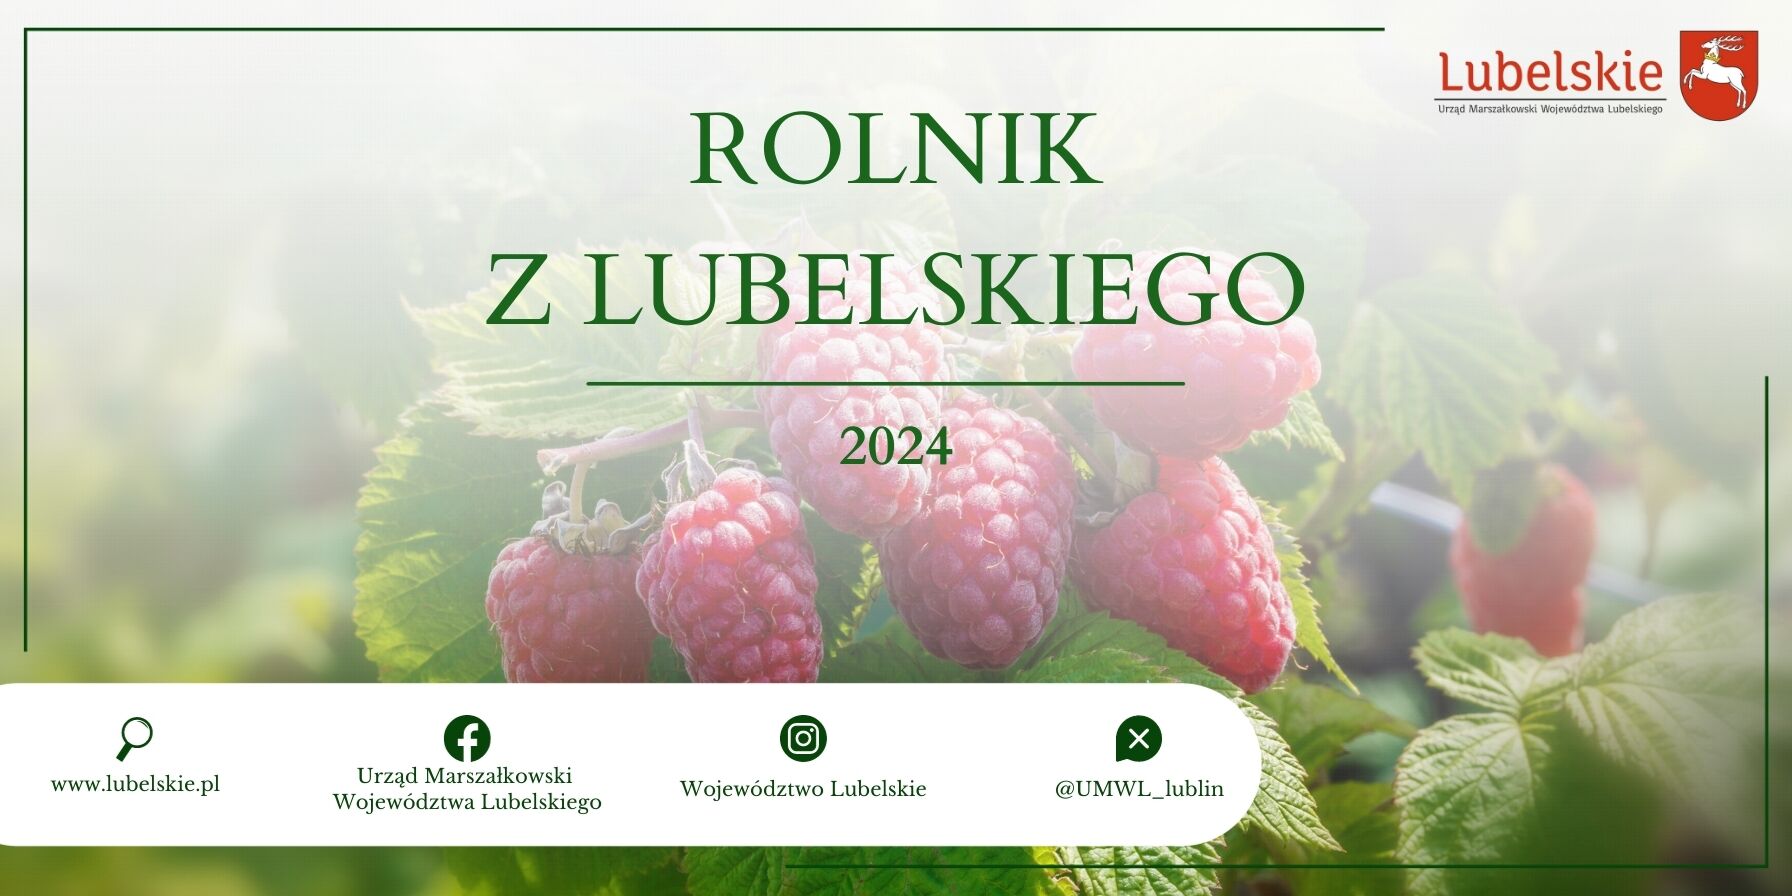 Zdjęcie promocyjne z napisem "Rolnik z Lubelskiego 2024" przedstawia dojrzałe, czerwone maliny na tle zamglonych zielonych liści. Na dole widać logotypy i adres strony.